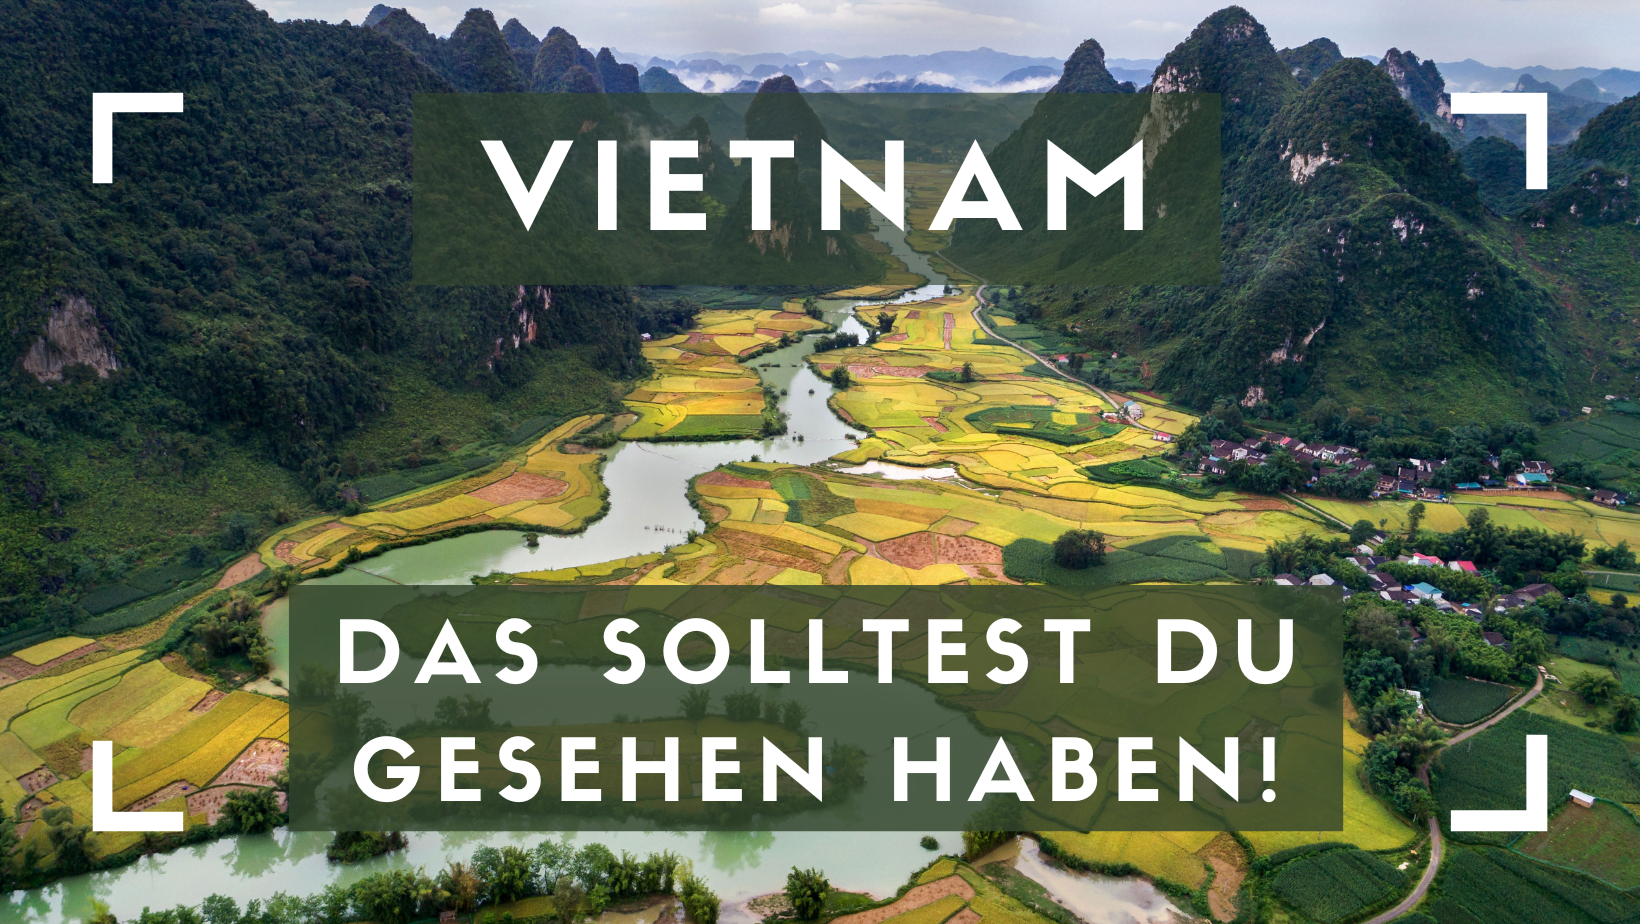 Vietnam - Das solltest du gesehen haben